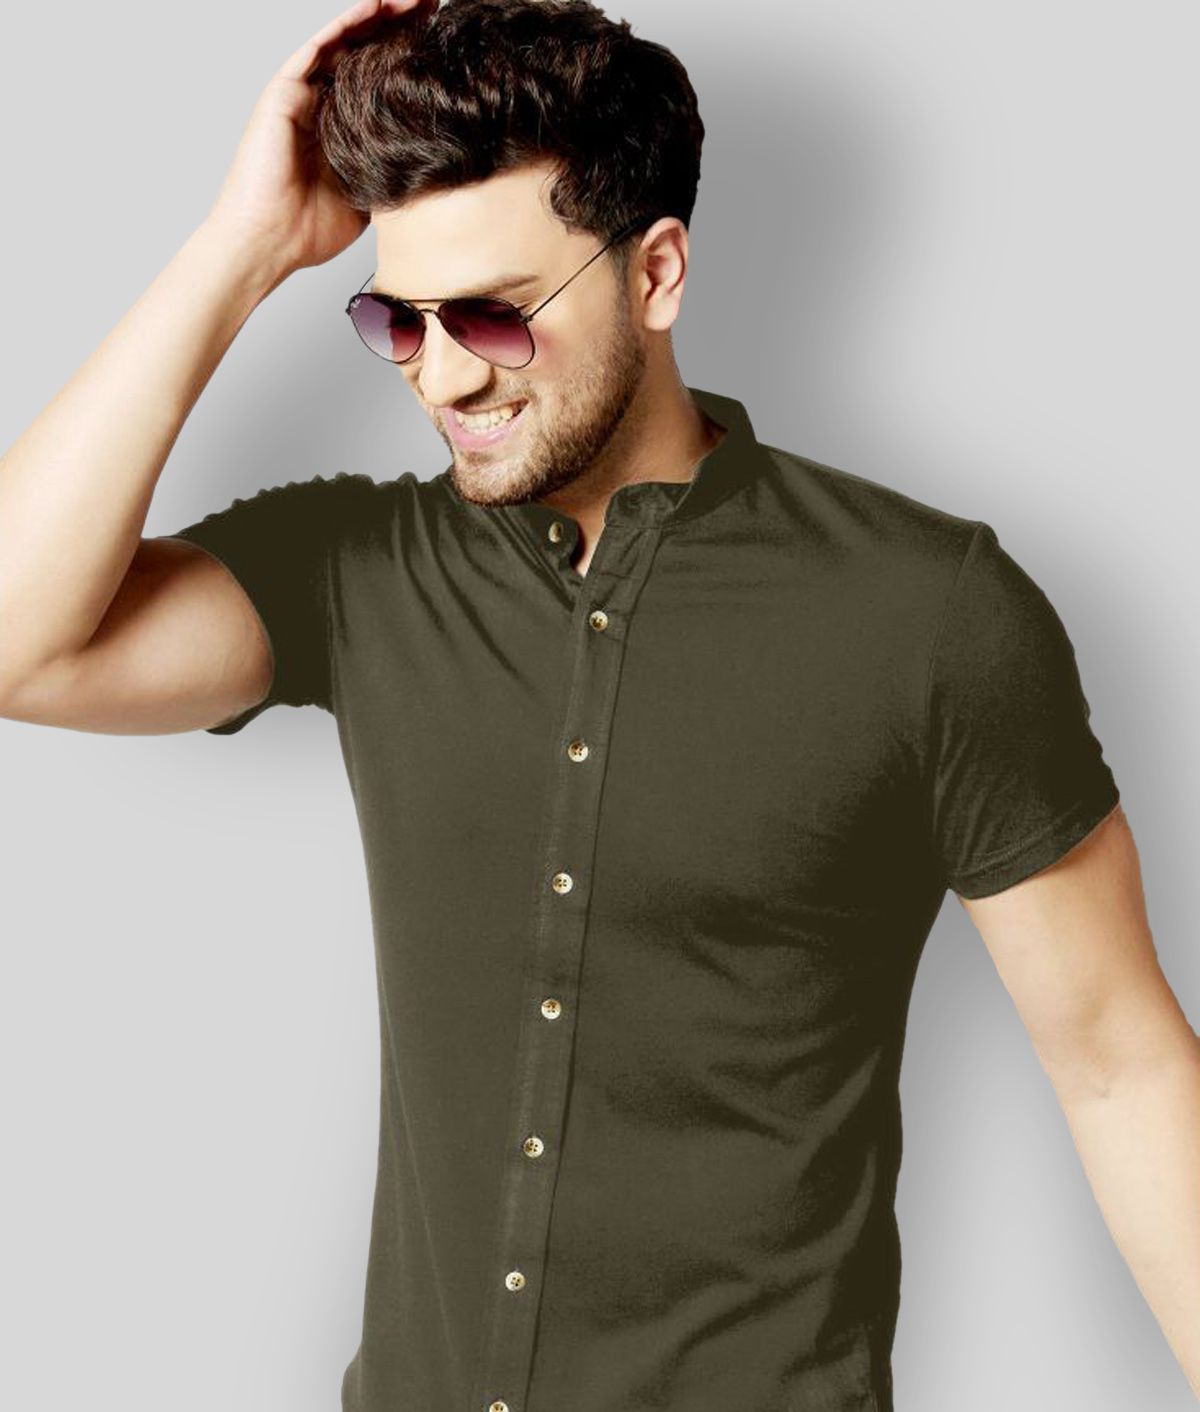     			GESPO - Green Cotton Blend Regular Fit Men's Casual Shirt (Pack of 1)